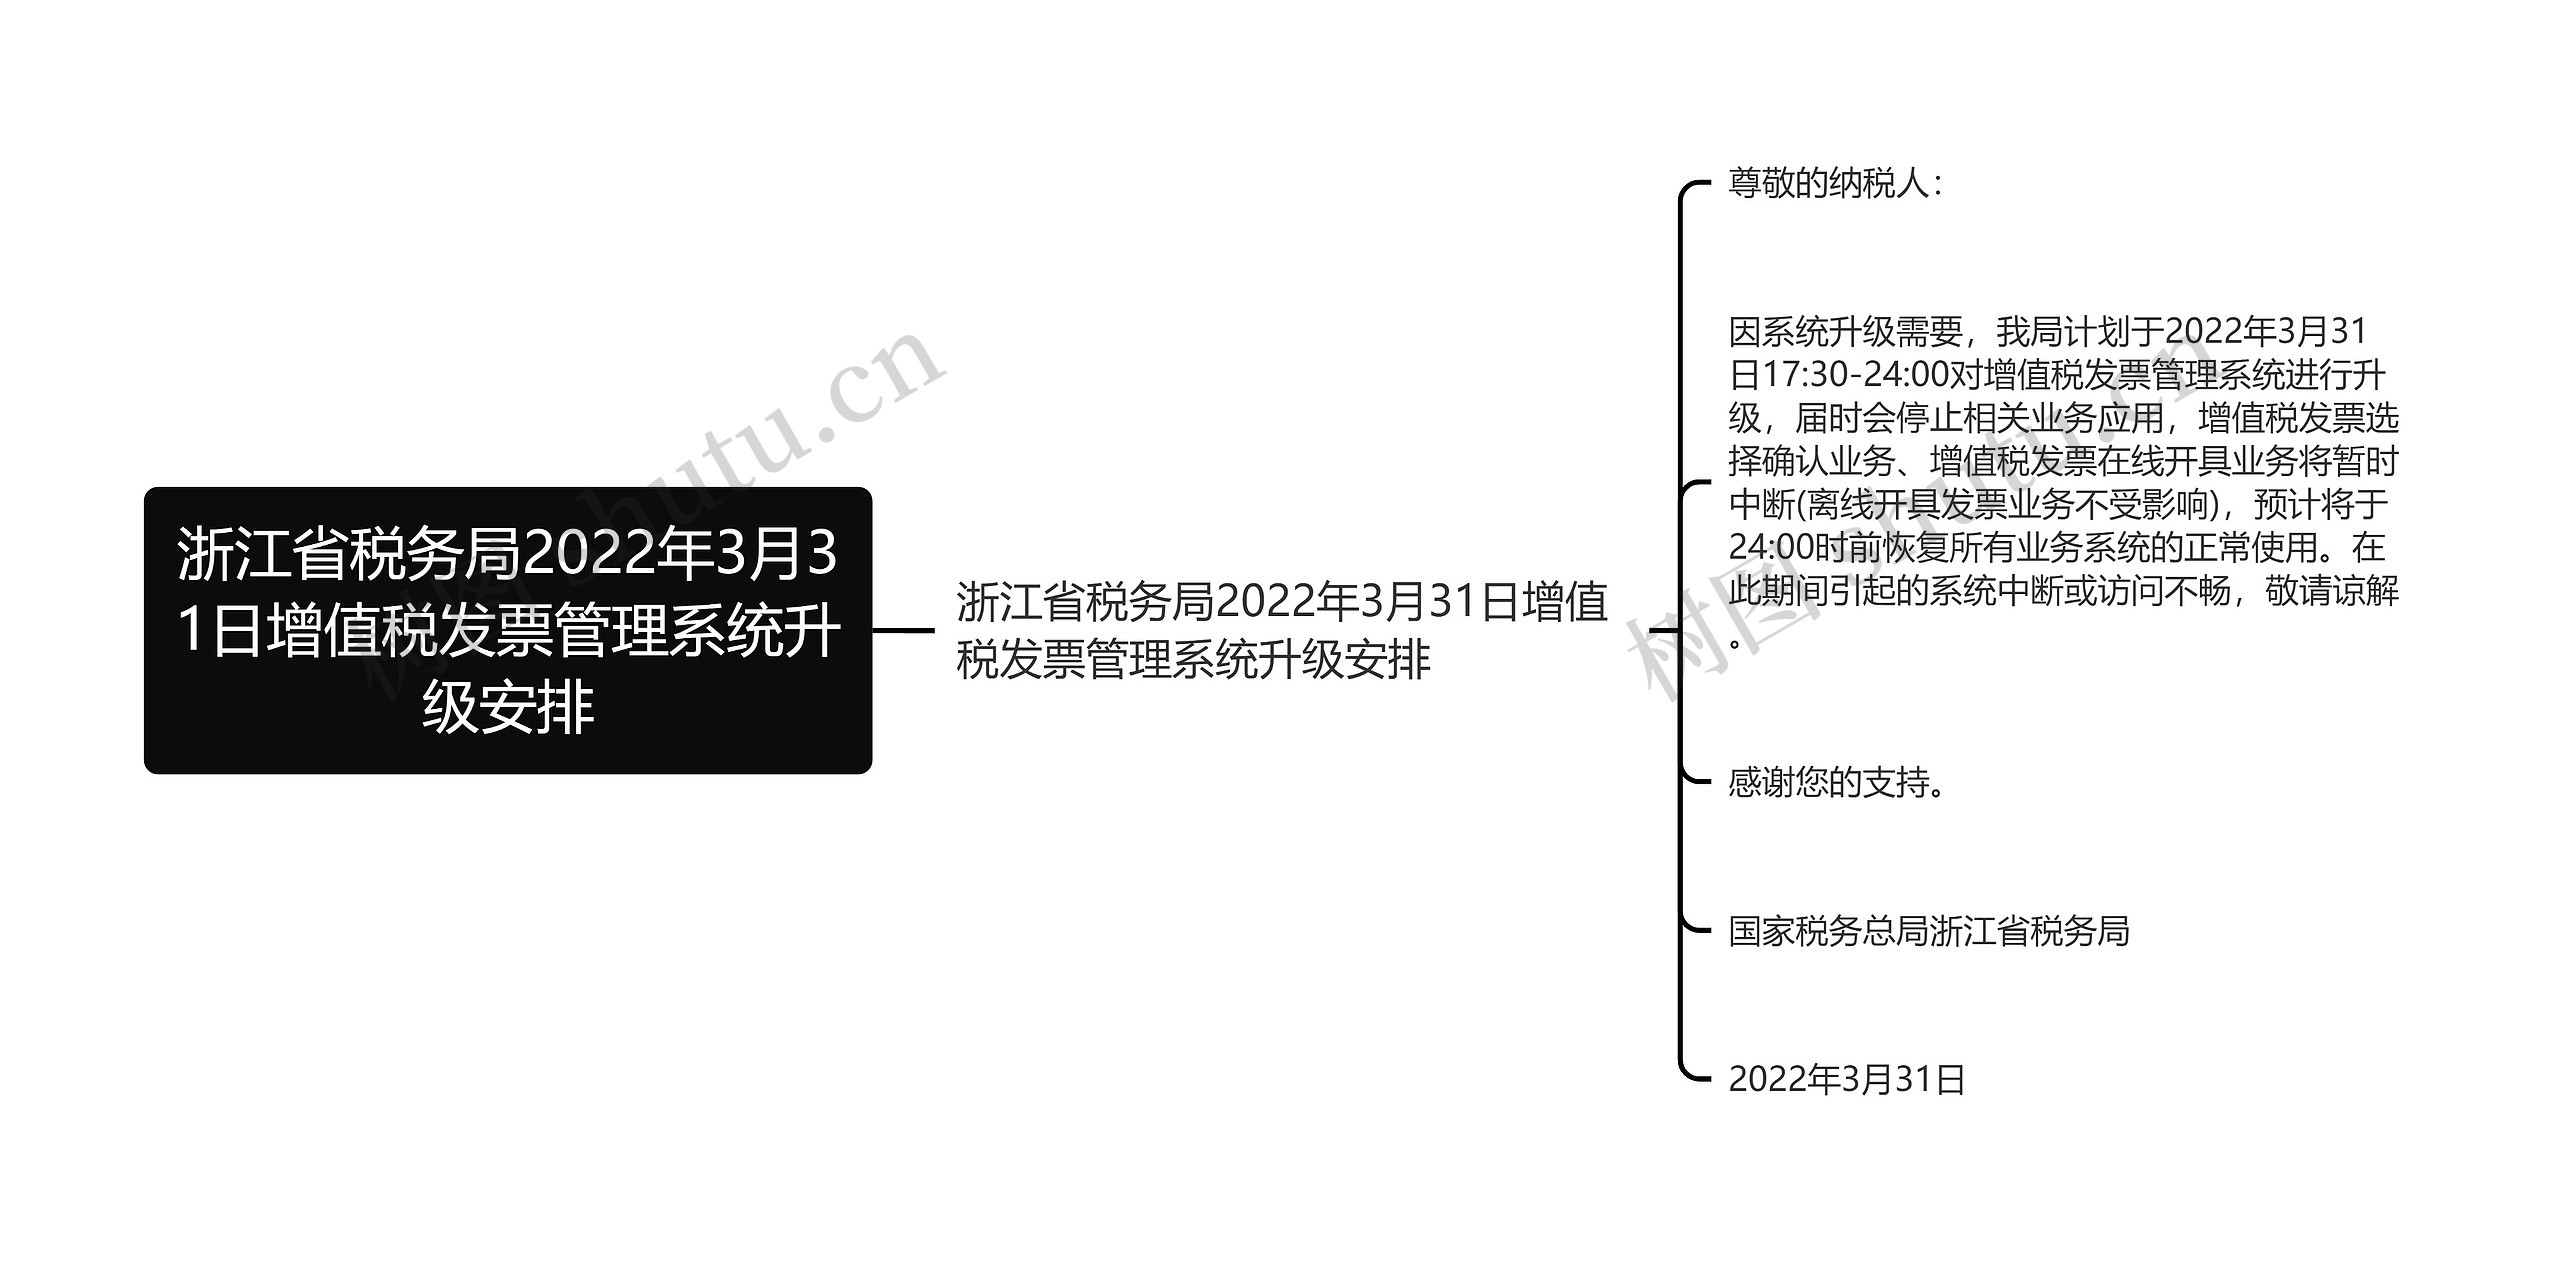 浙江省税务局2022年3月31日增值税发票管理系统升级安排思维导图